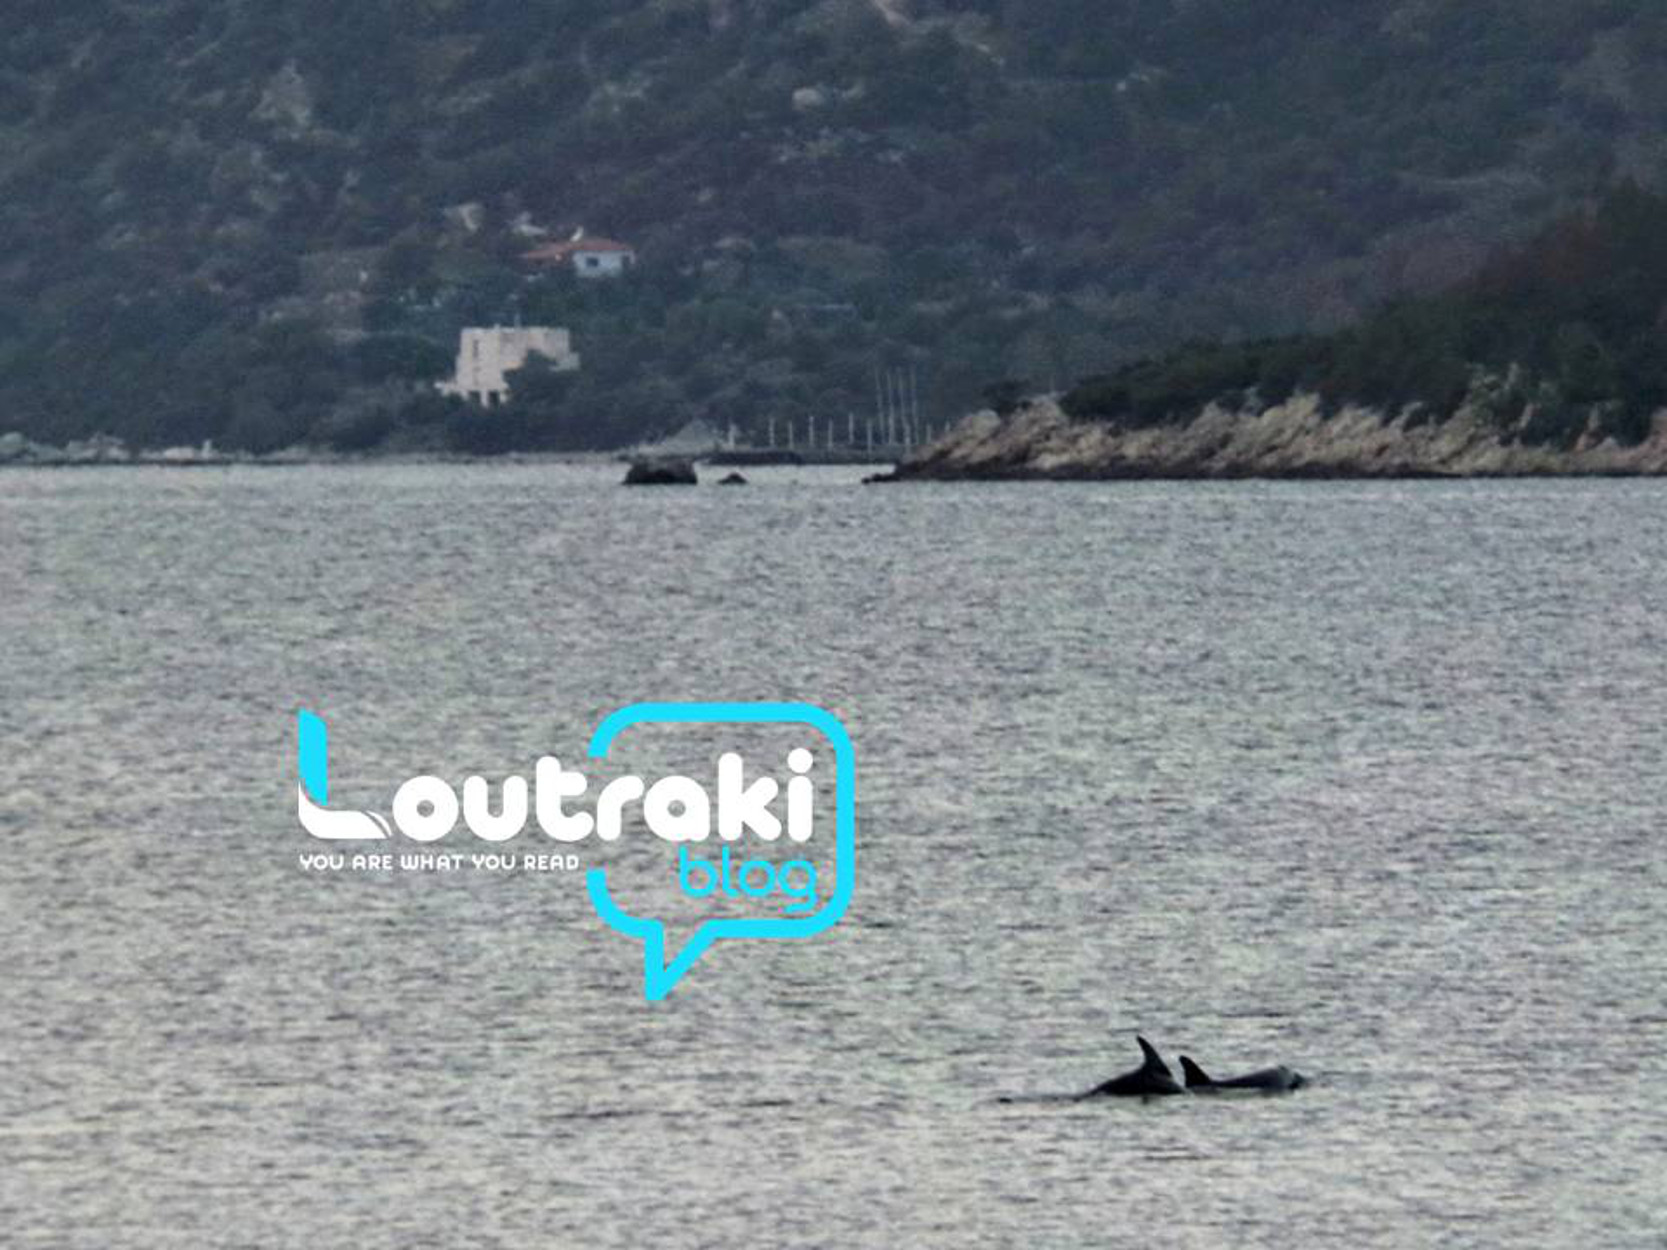 Λουτράκι: Υπέροχο θέαμα με 4 δελφίνια να κολυμπούν